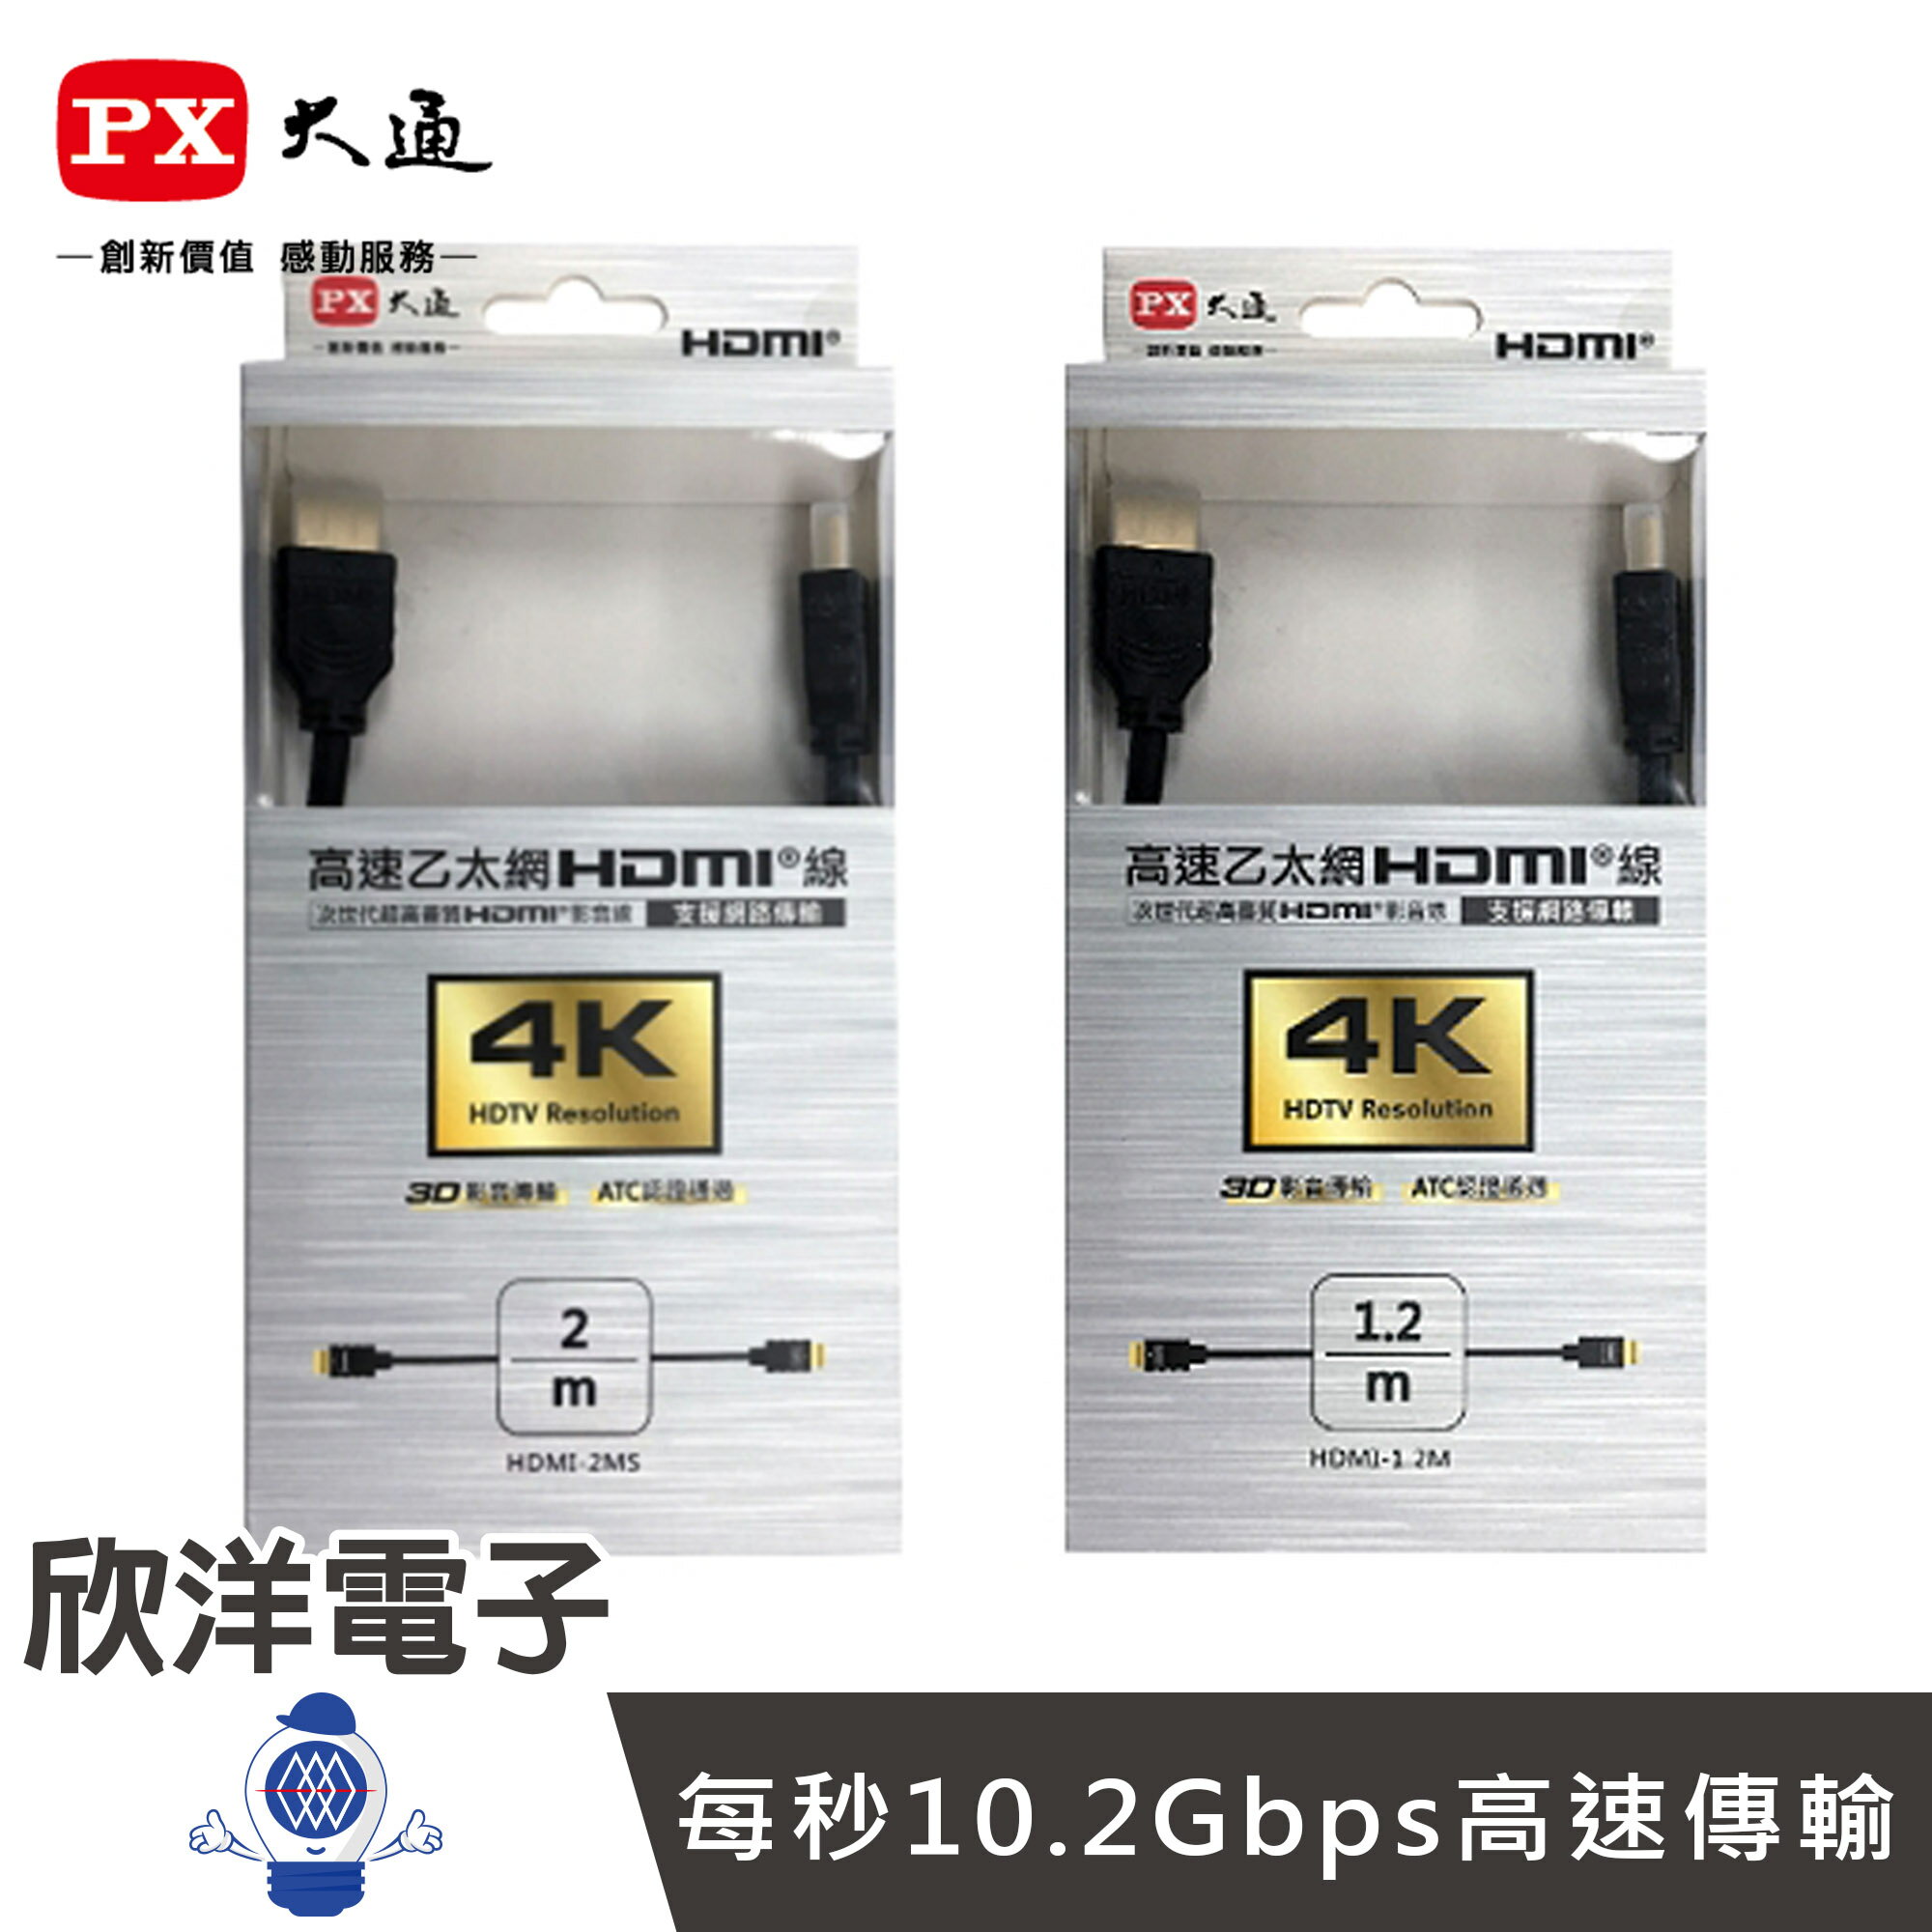 ※ 欣洋電子 ※ PX大通 高速乙太網3D超高解析HDMI 1.4版影音傳輸線 1.2米 (HDMI-1.2MS)